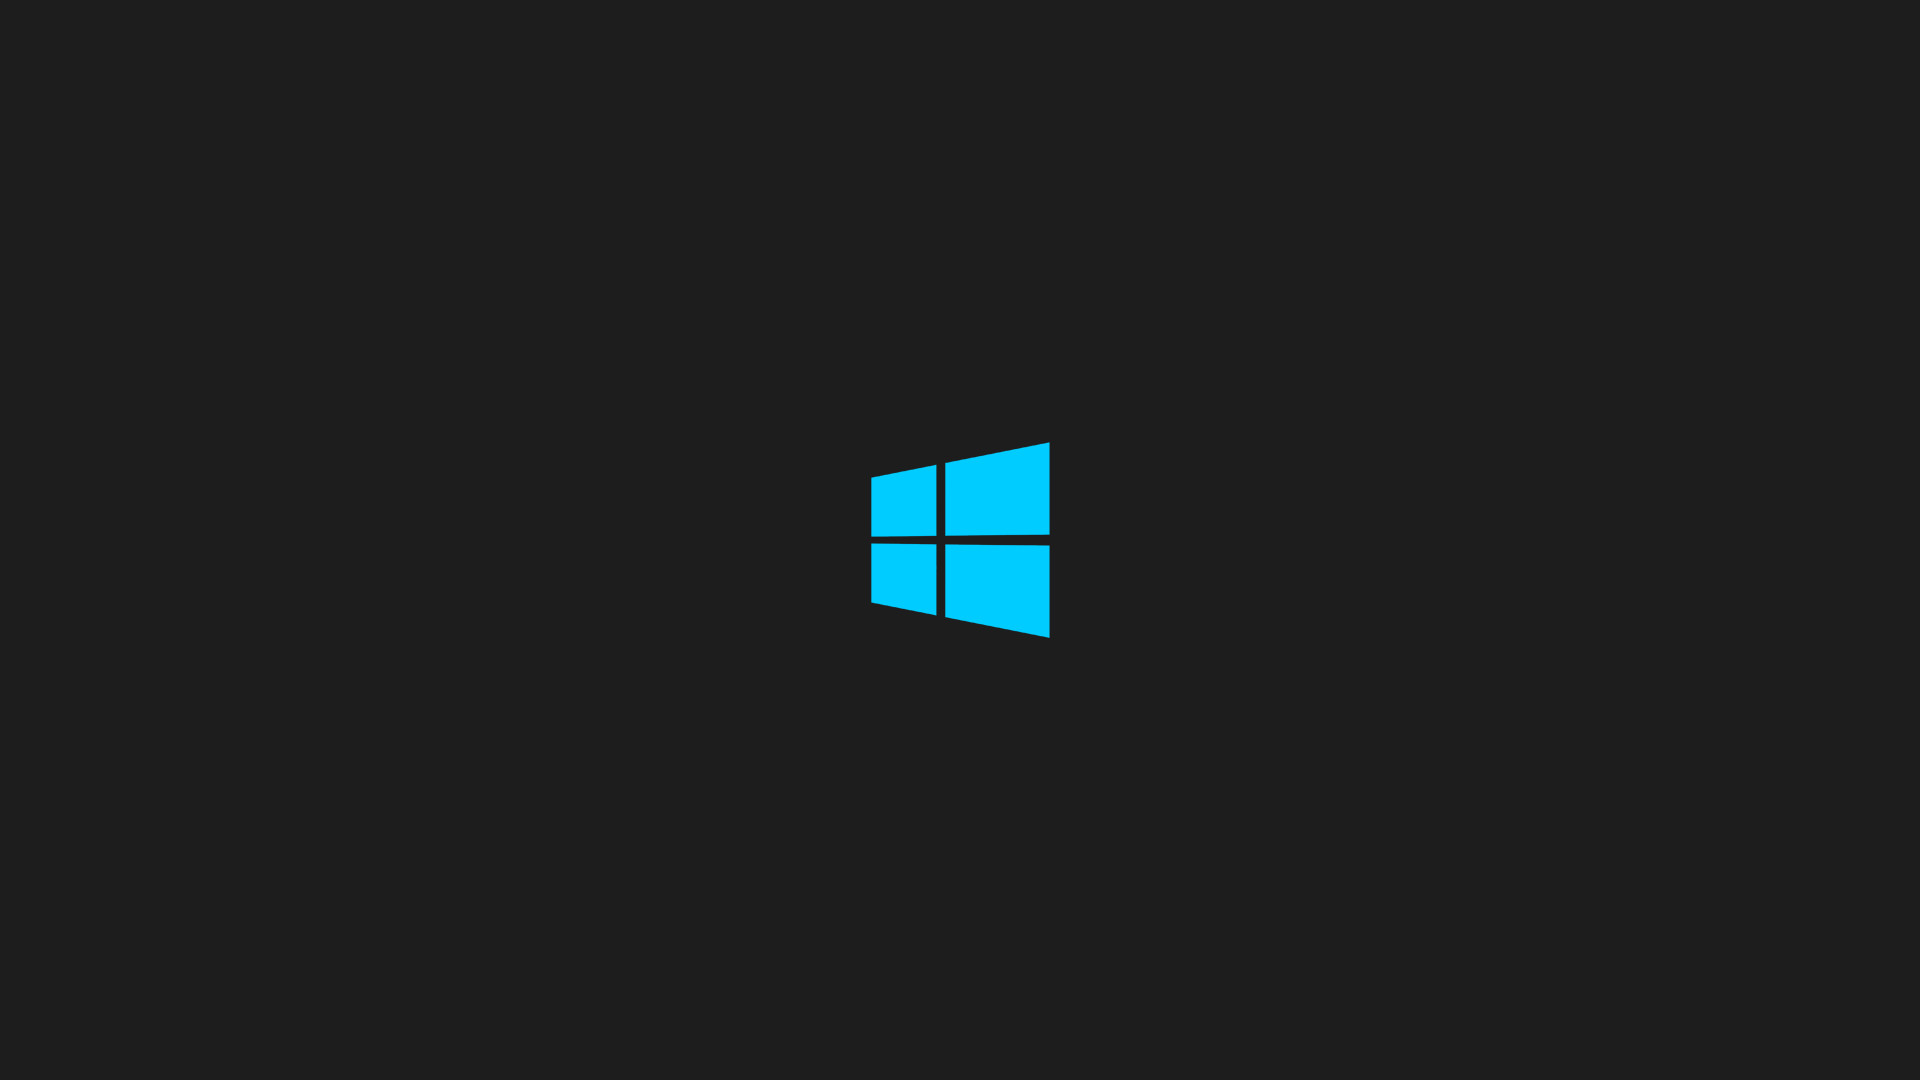 1920x1080 Windows 8 HD Wallpaper | Hintergrund |  | ID:437229 - Wallpaper  Abyss